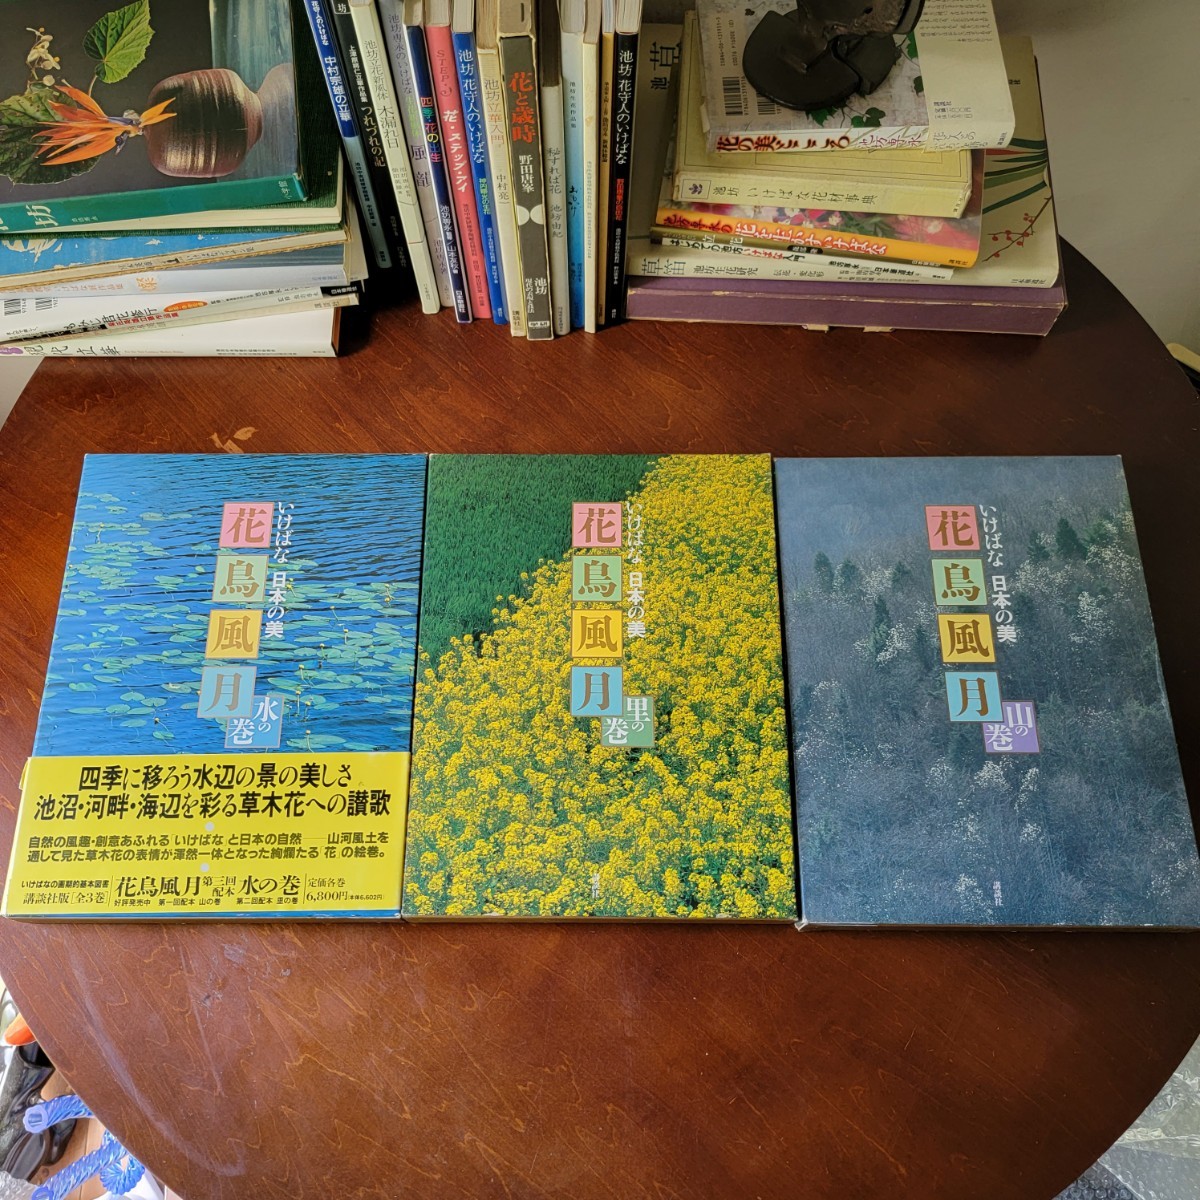 いけばな 日本の美 花鳥風月 3冊セット 定価6,800 講談社 花器 花瓶